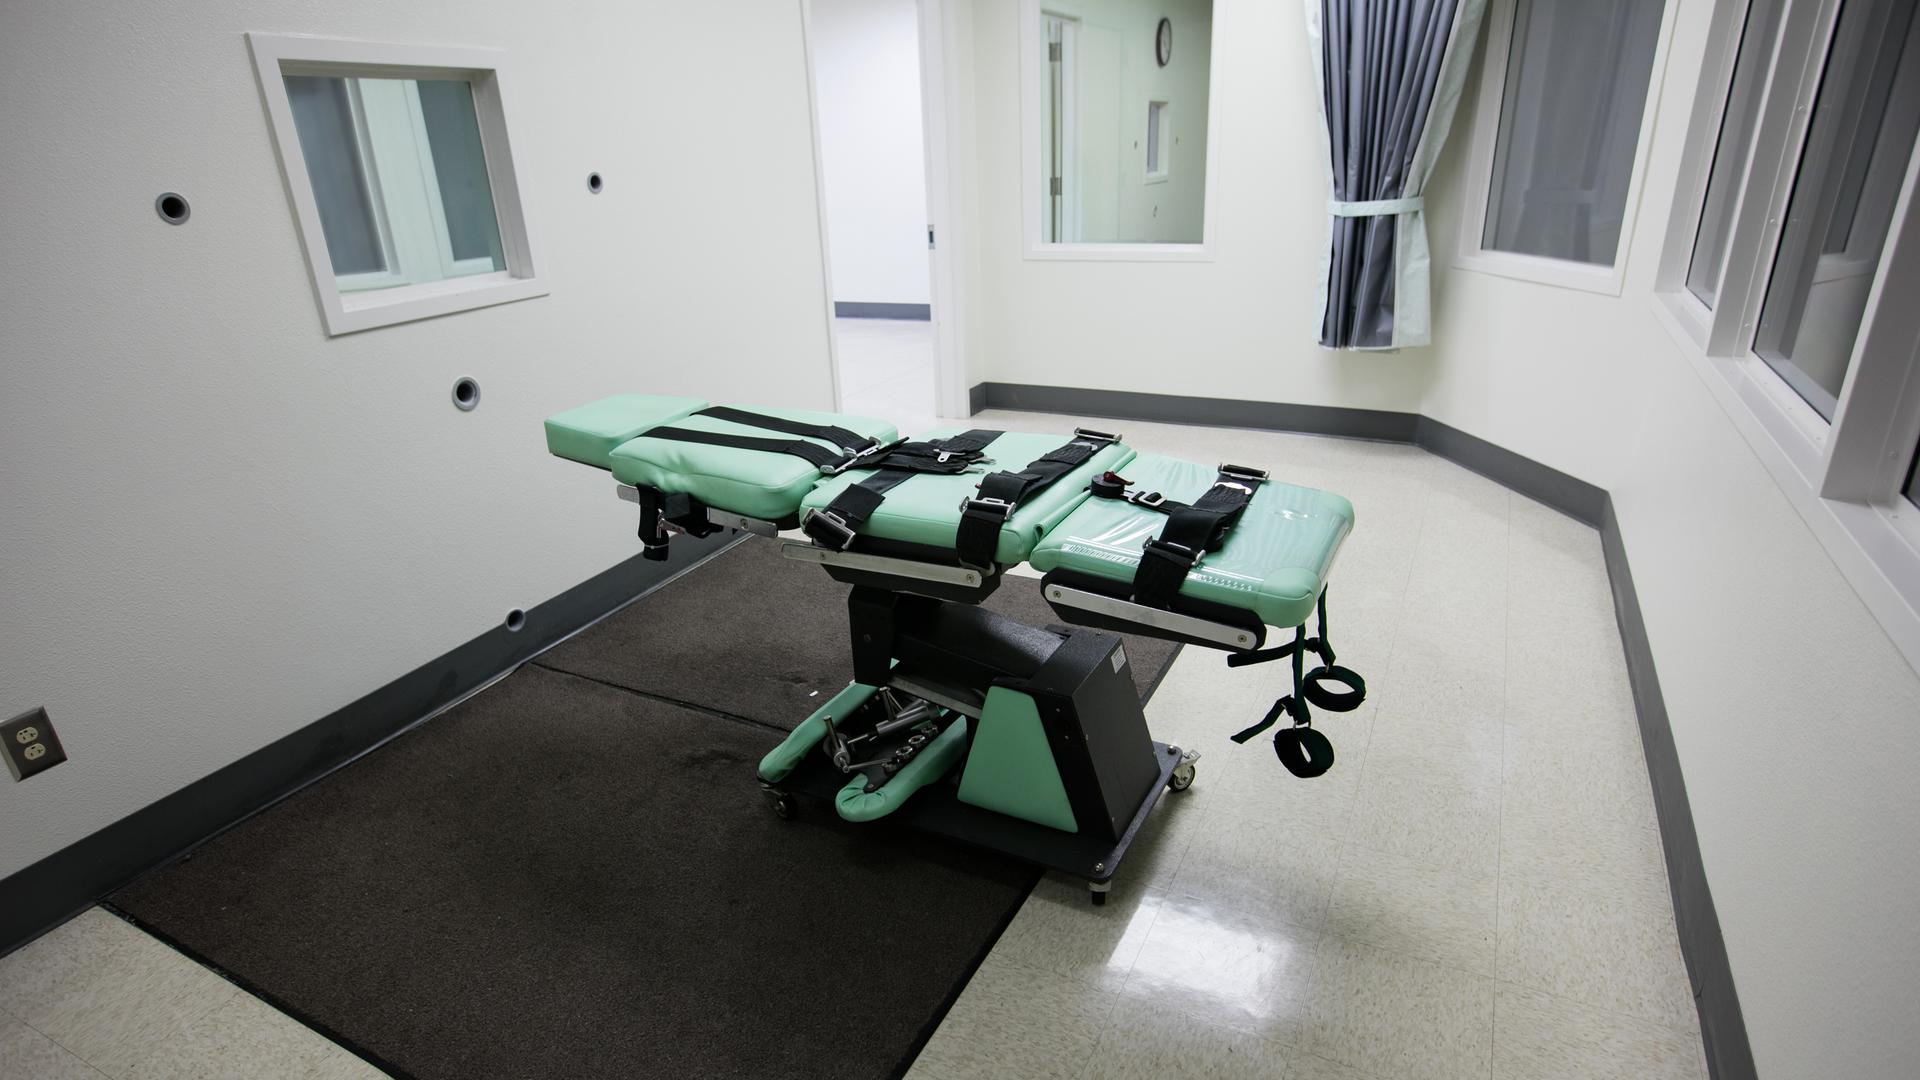 Der Hinrichtungsstuhl im "San Quentin State Prison" Gefängnis in Kalifornien, 2019.